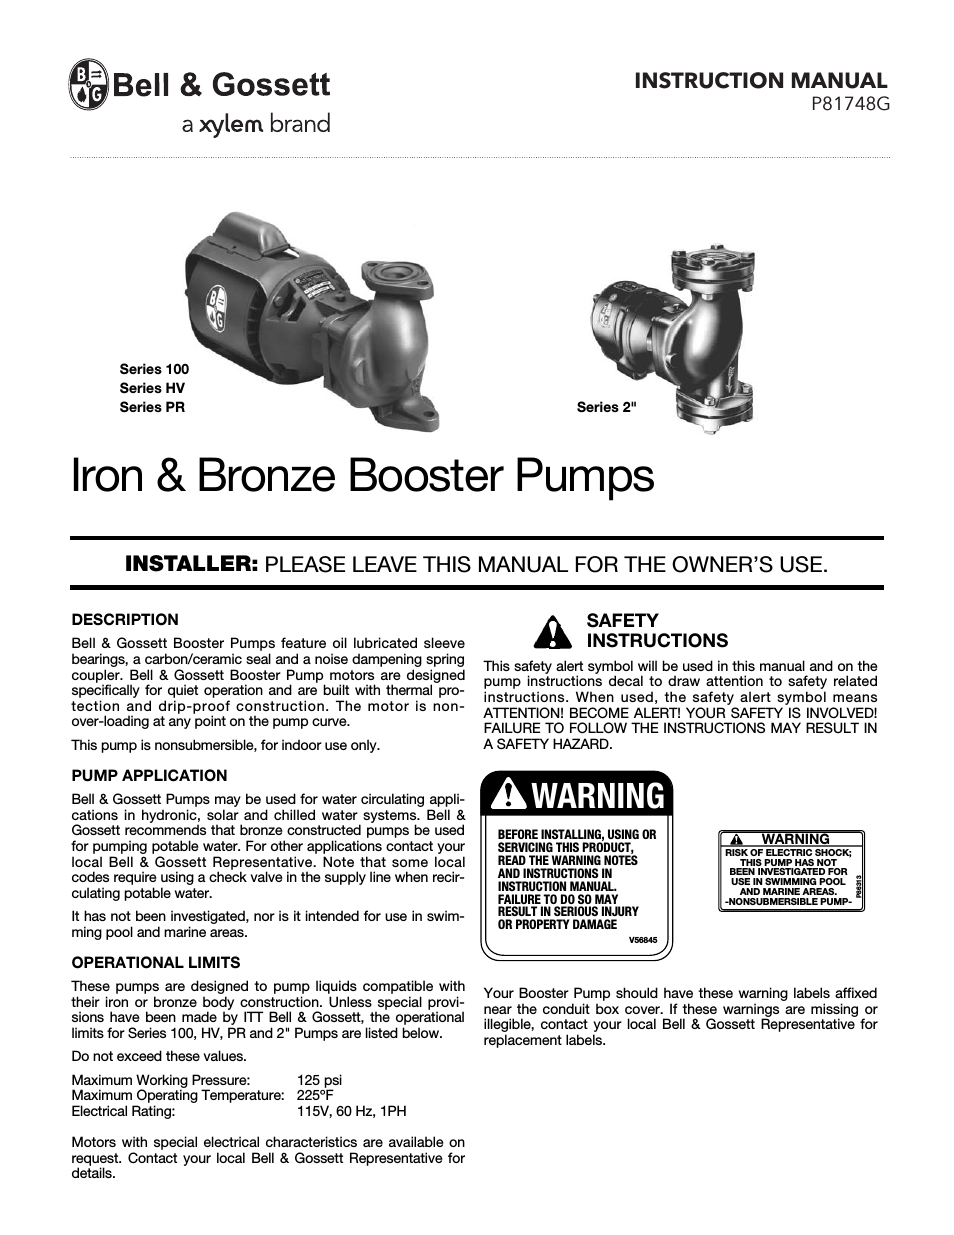 Iron & Bronze Booster Pumps Series HV